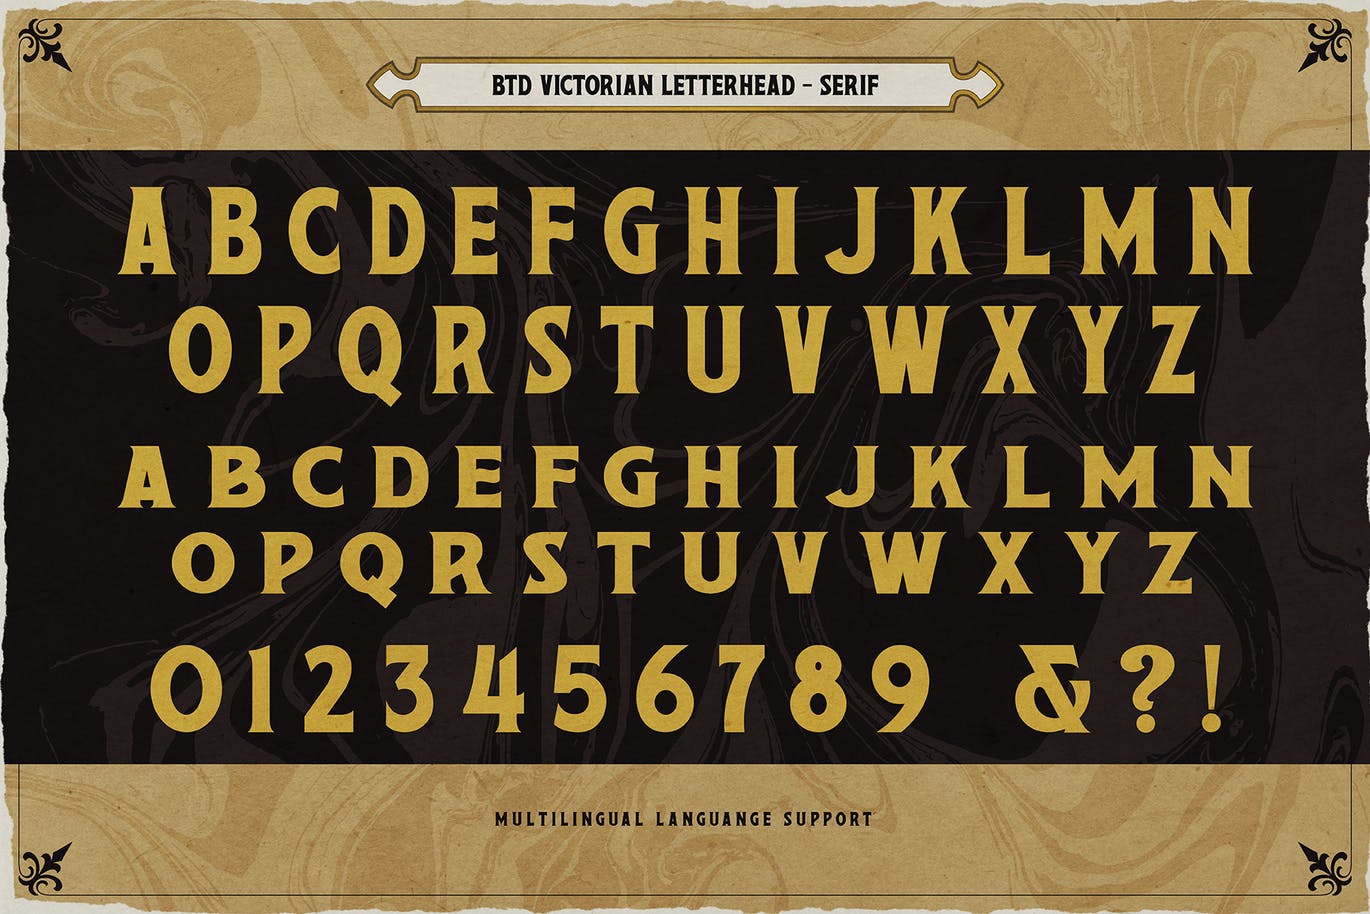 复古维多利亚版式设计衬线字体素材 Victorian Letterhead 设计素材 第10张